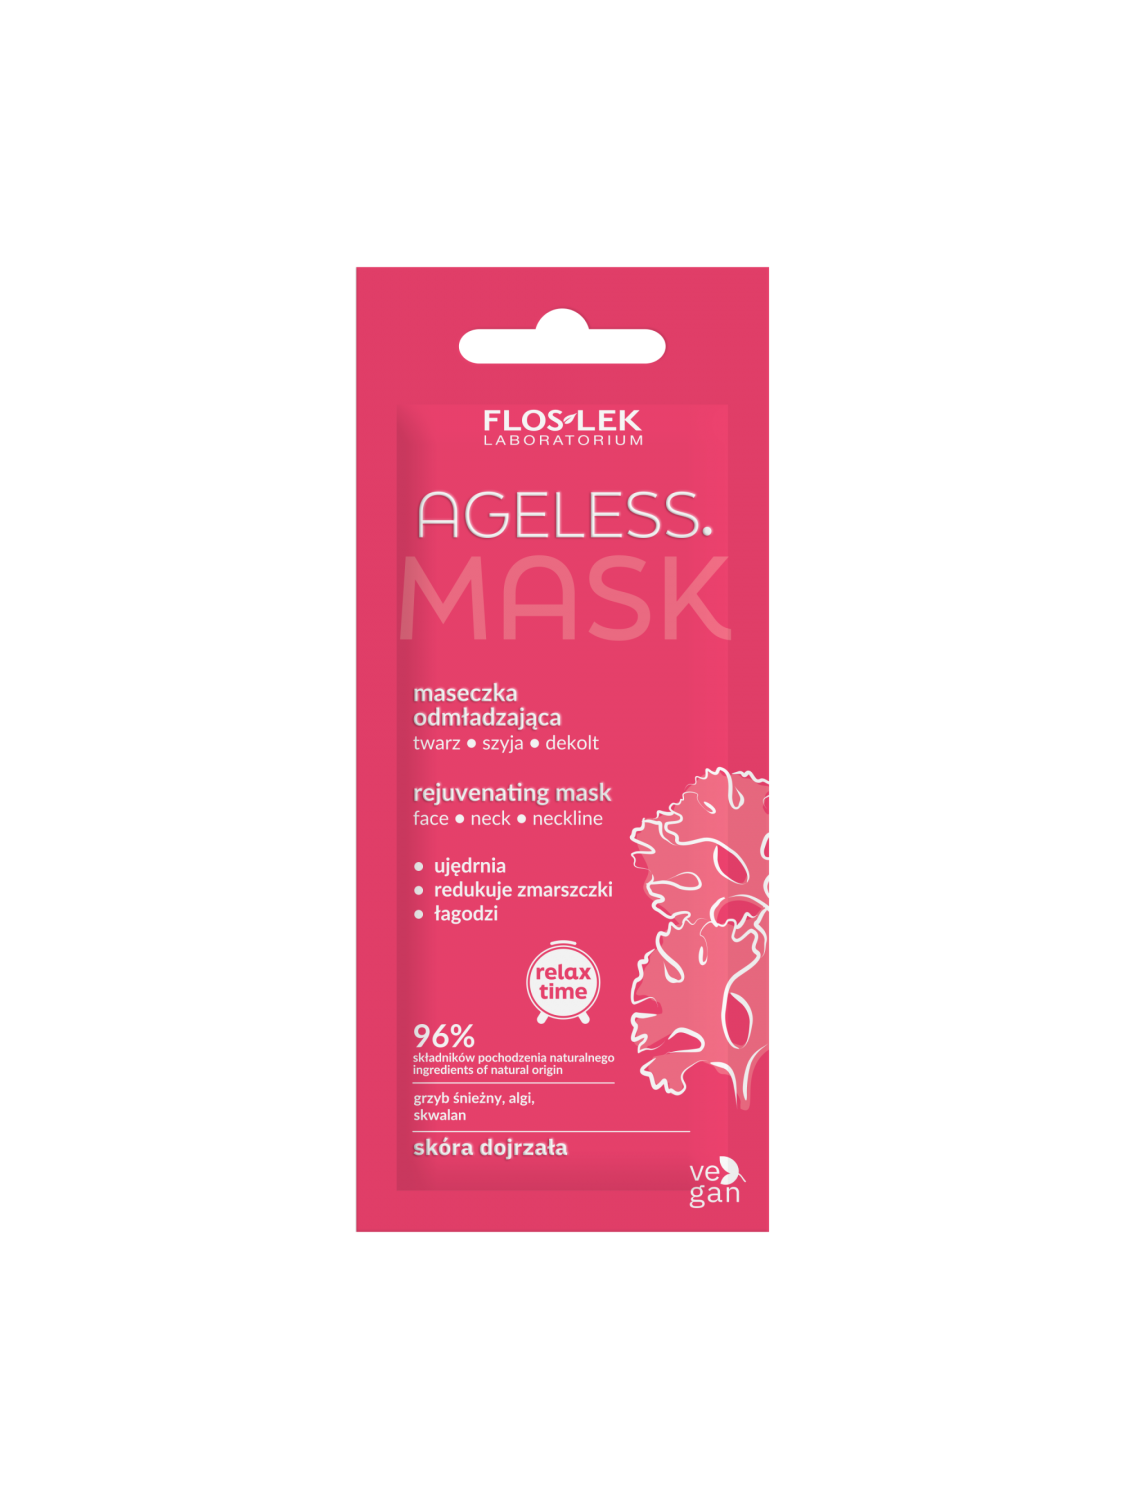 AGELESS. Омолоджуюча маска для обличчя, шиї та декольте 6 мл - Floslek